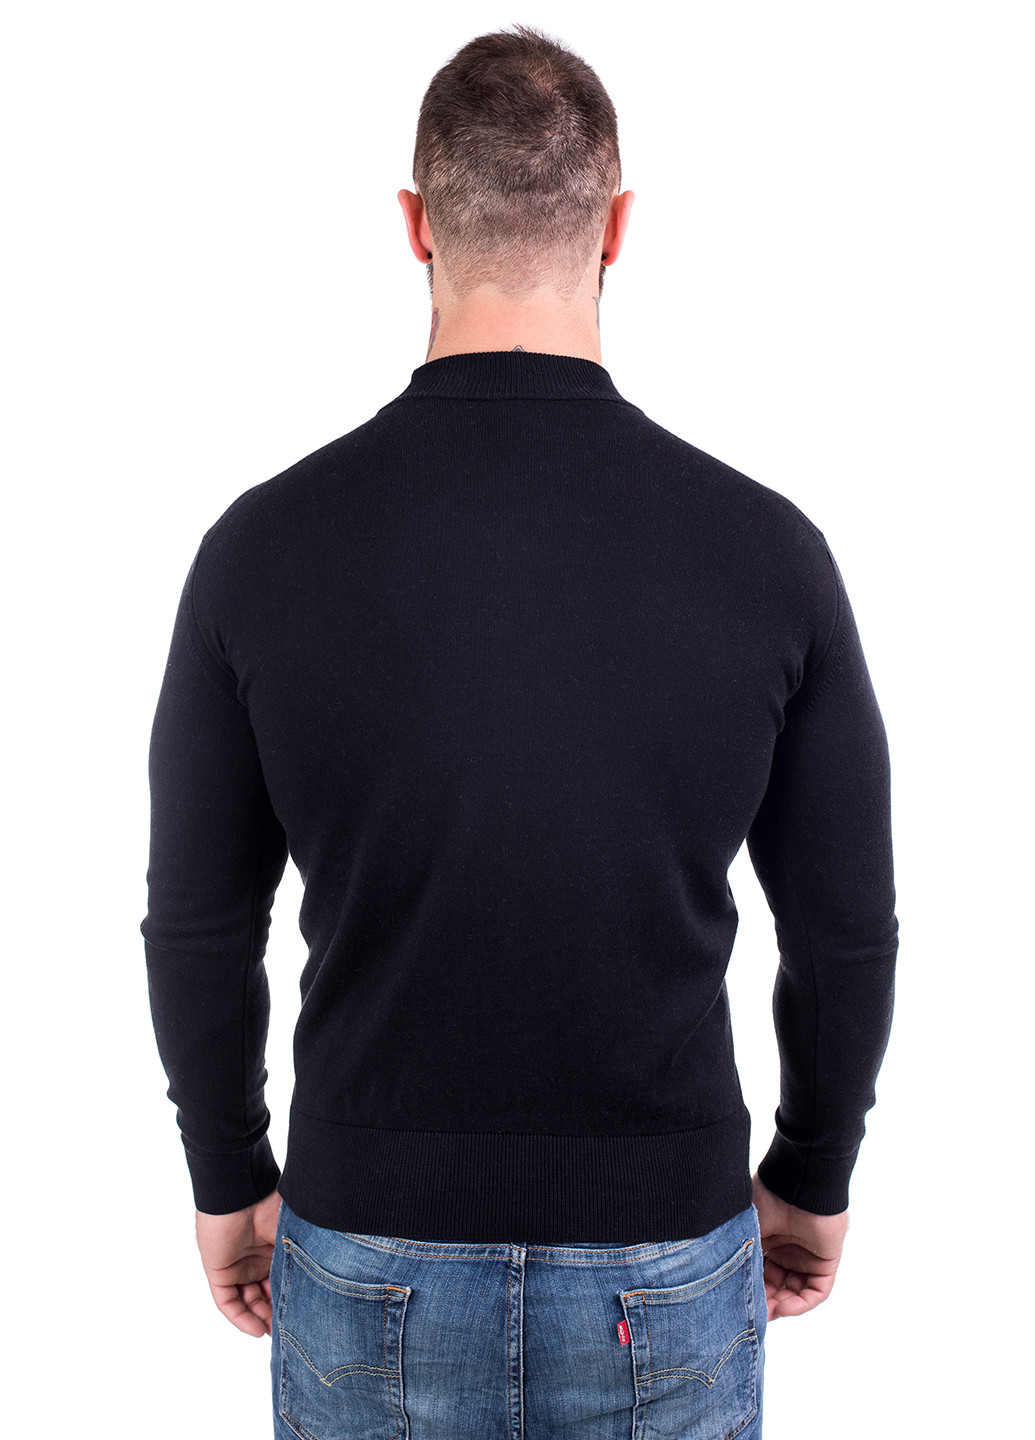 Черный демисезонный свитер джемпер Viviami